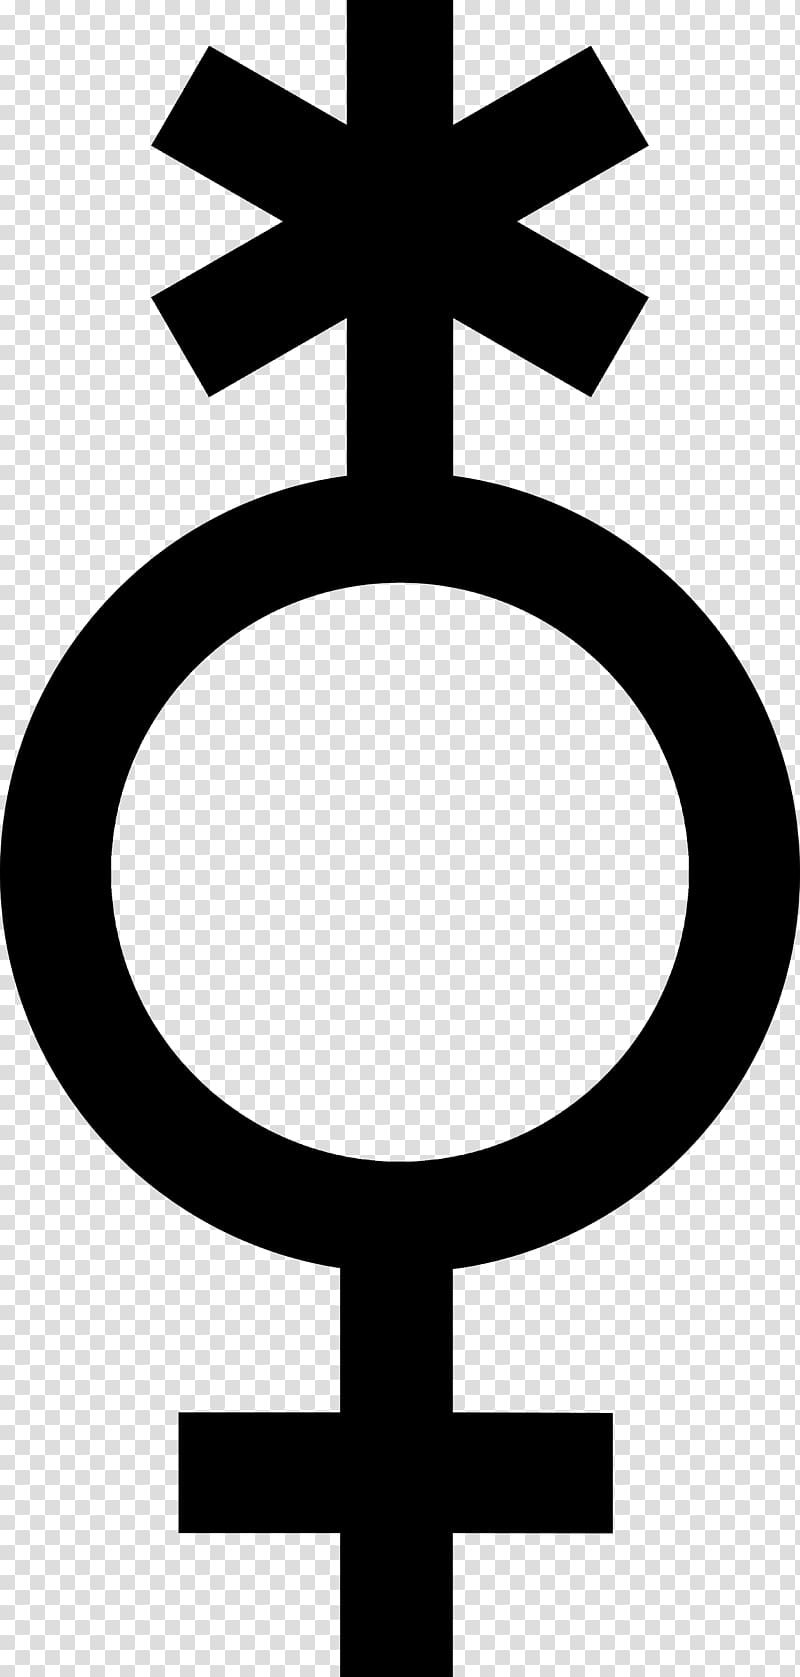 Lack of gender identities Pangender Bigender Gender binary, symbol transparent background PNG clipart